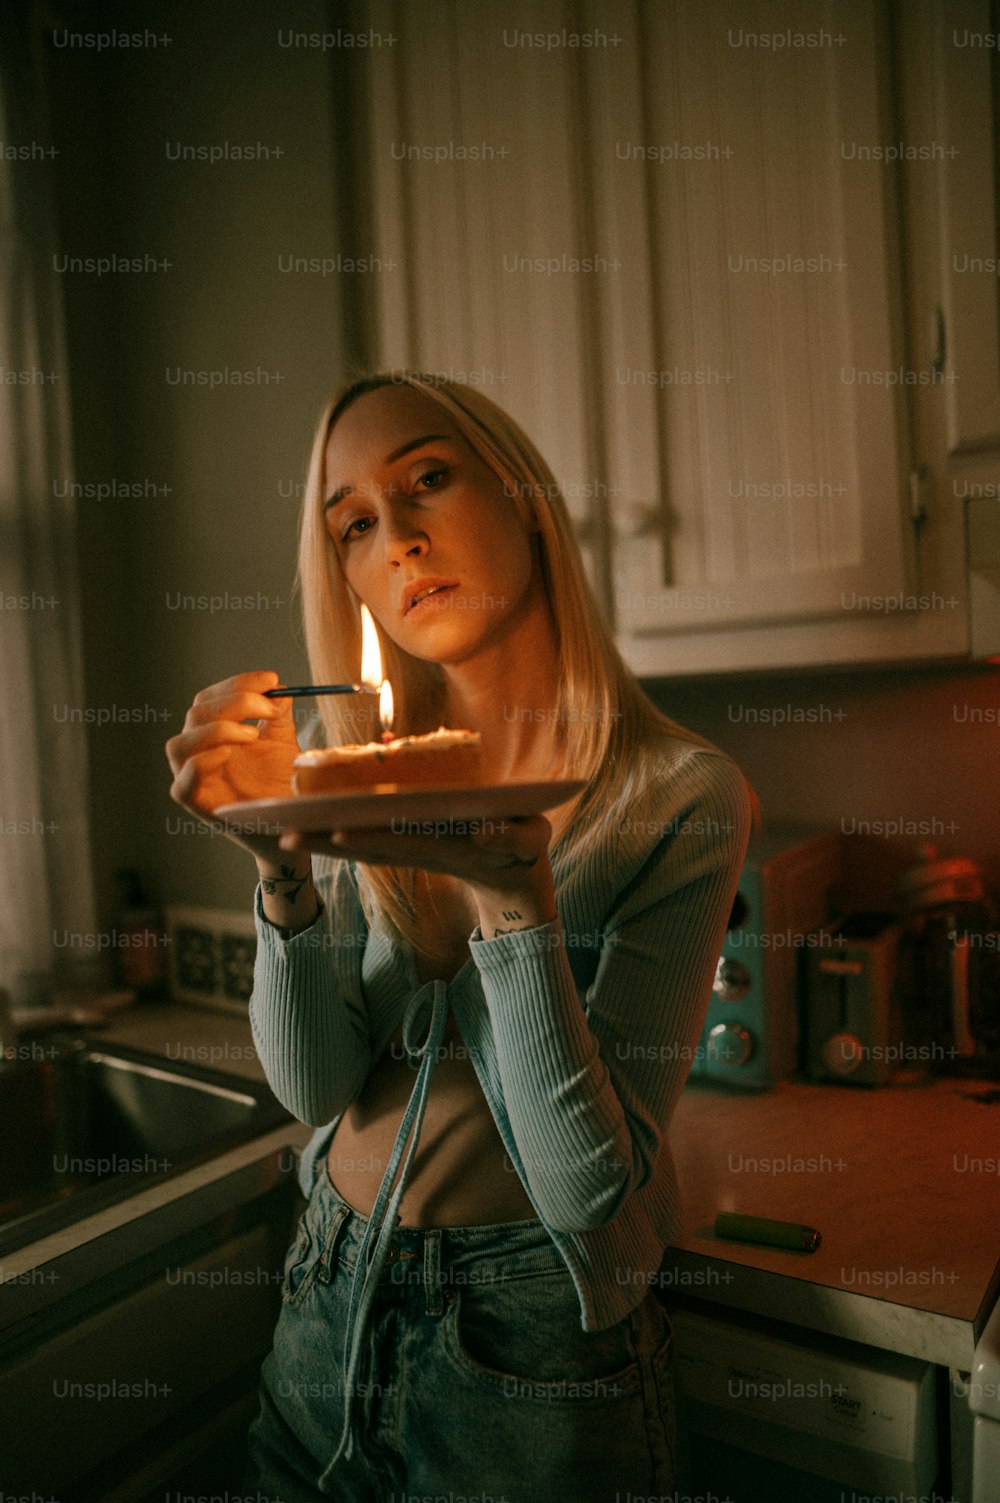 Eine Frau hält einen Teller mit einem Kuchen darauf